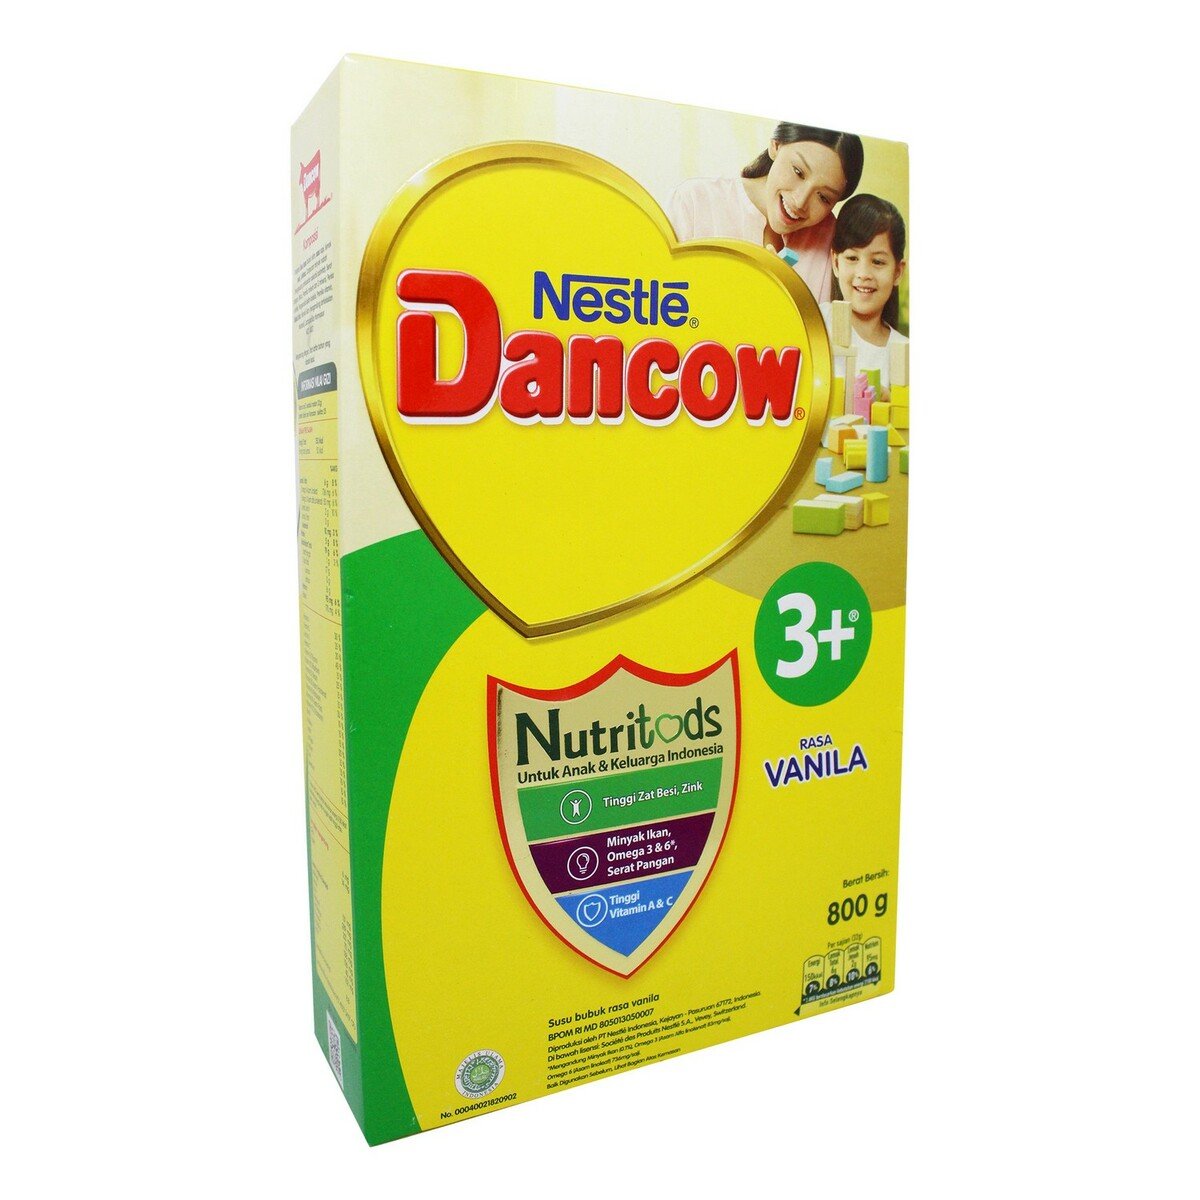 Dancow 3+ Vanilla Ex Probio 750g